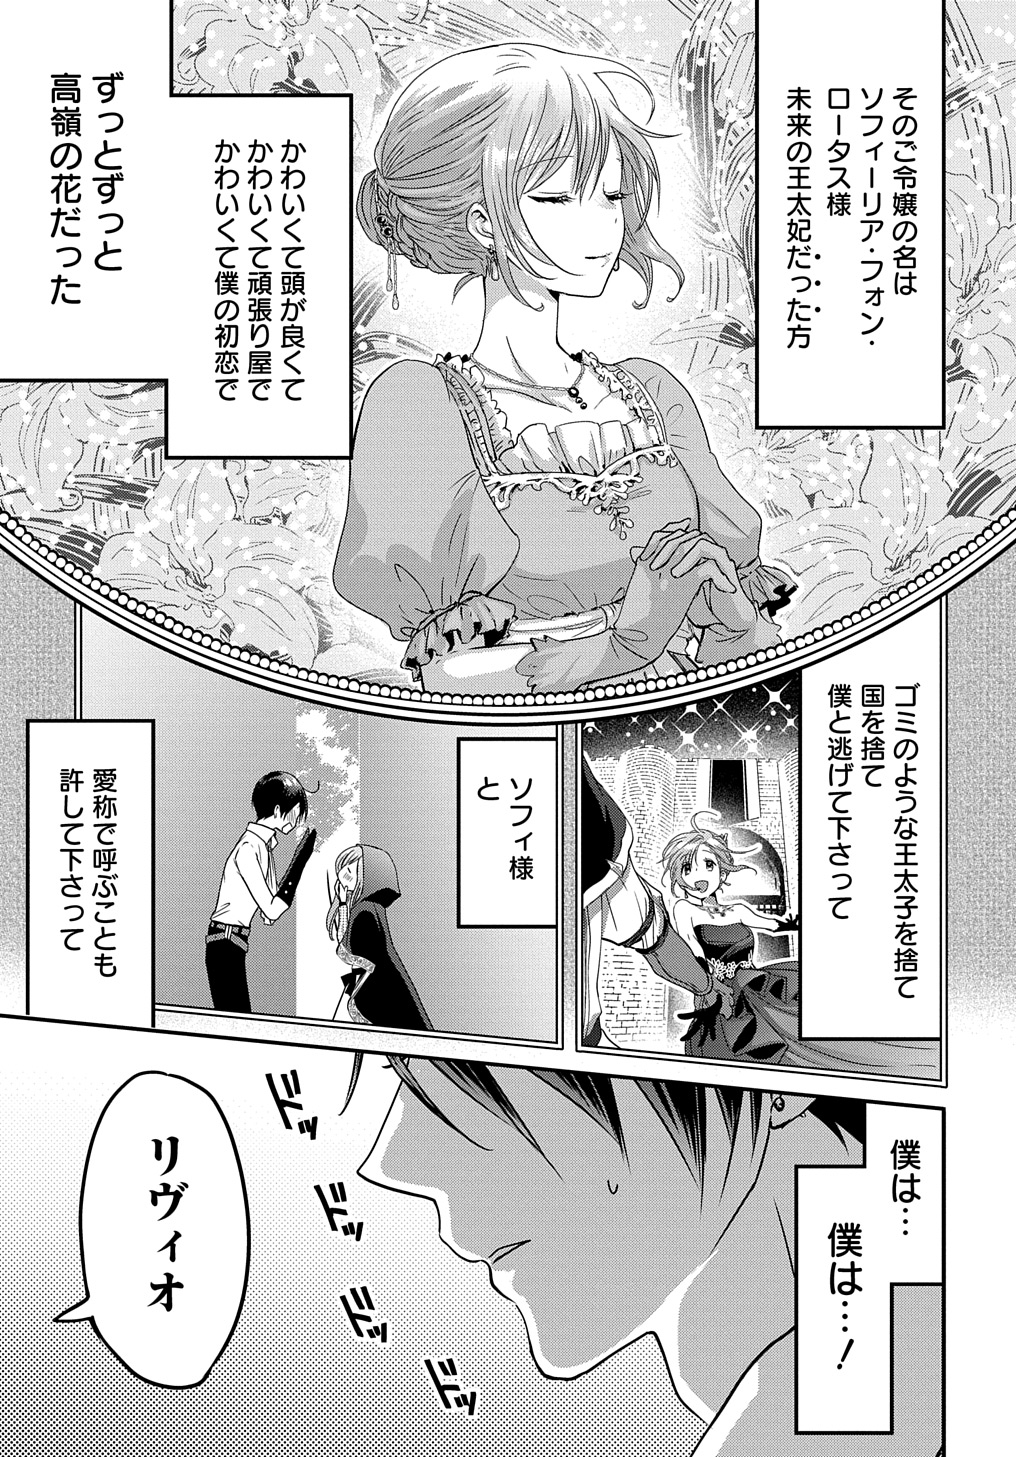 Konyakusha no Uwaki Genba wo Michatta no de Hajimari no Kane ga narimashita - Chapter 11 - Page 1